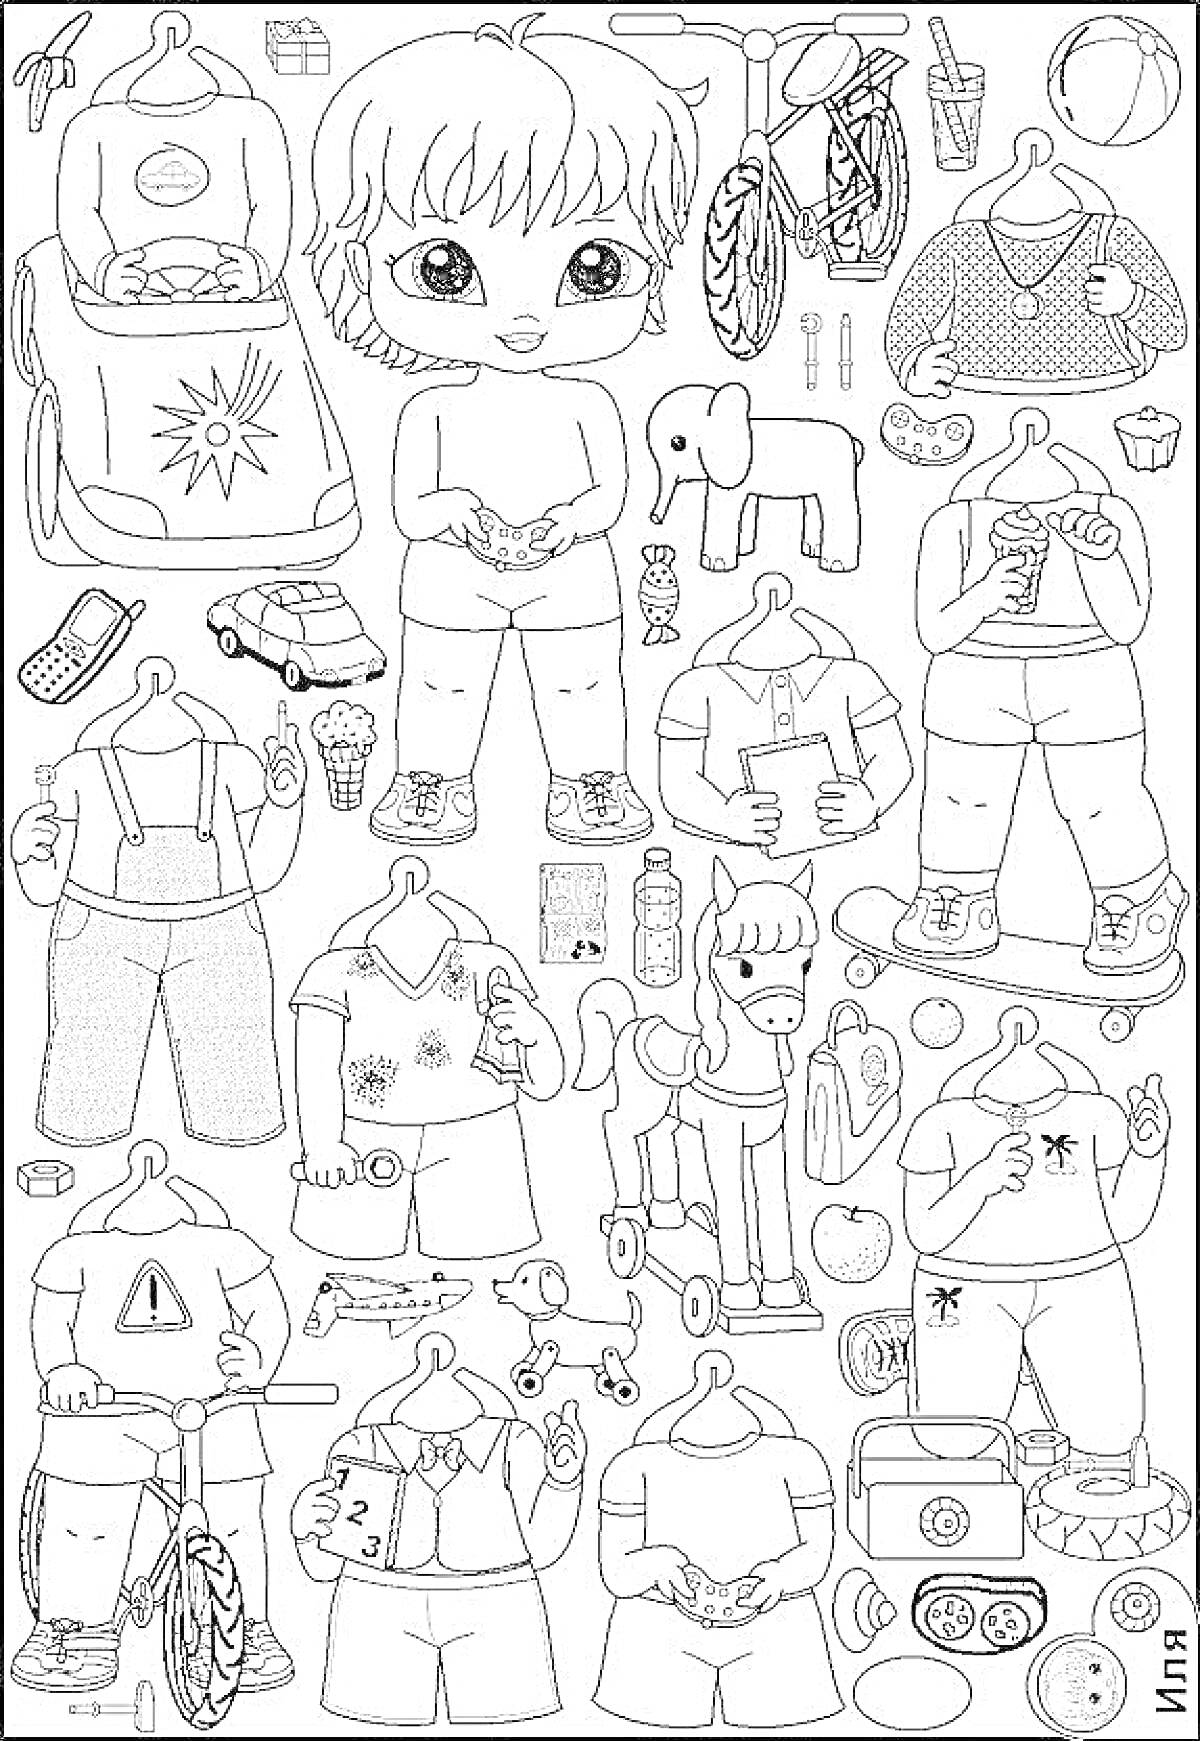 Раскраска Кукла ЛОЛ с одеждой, игрушками и аксессуарами